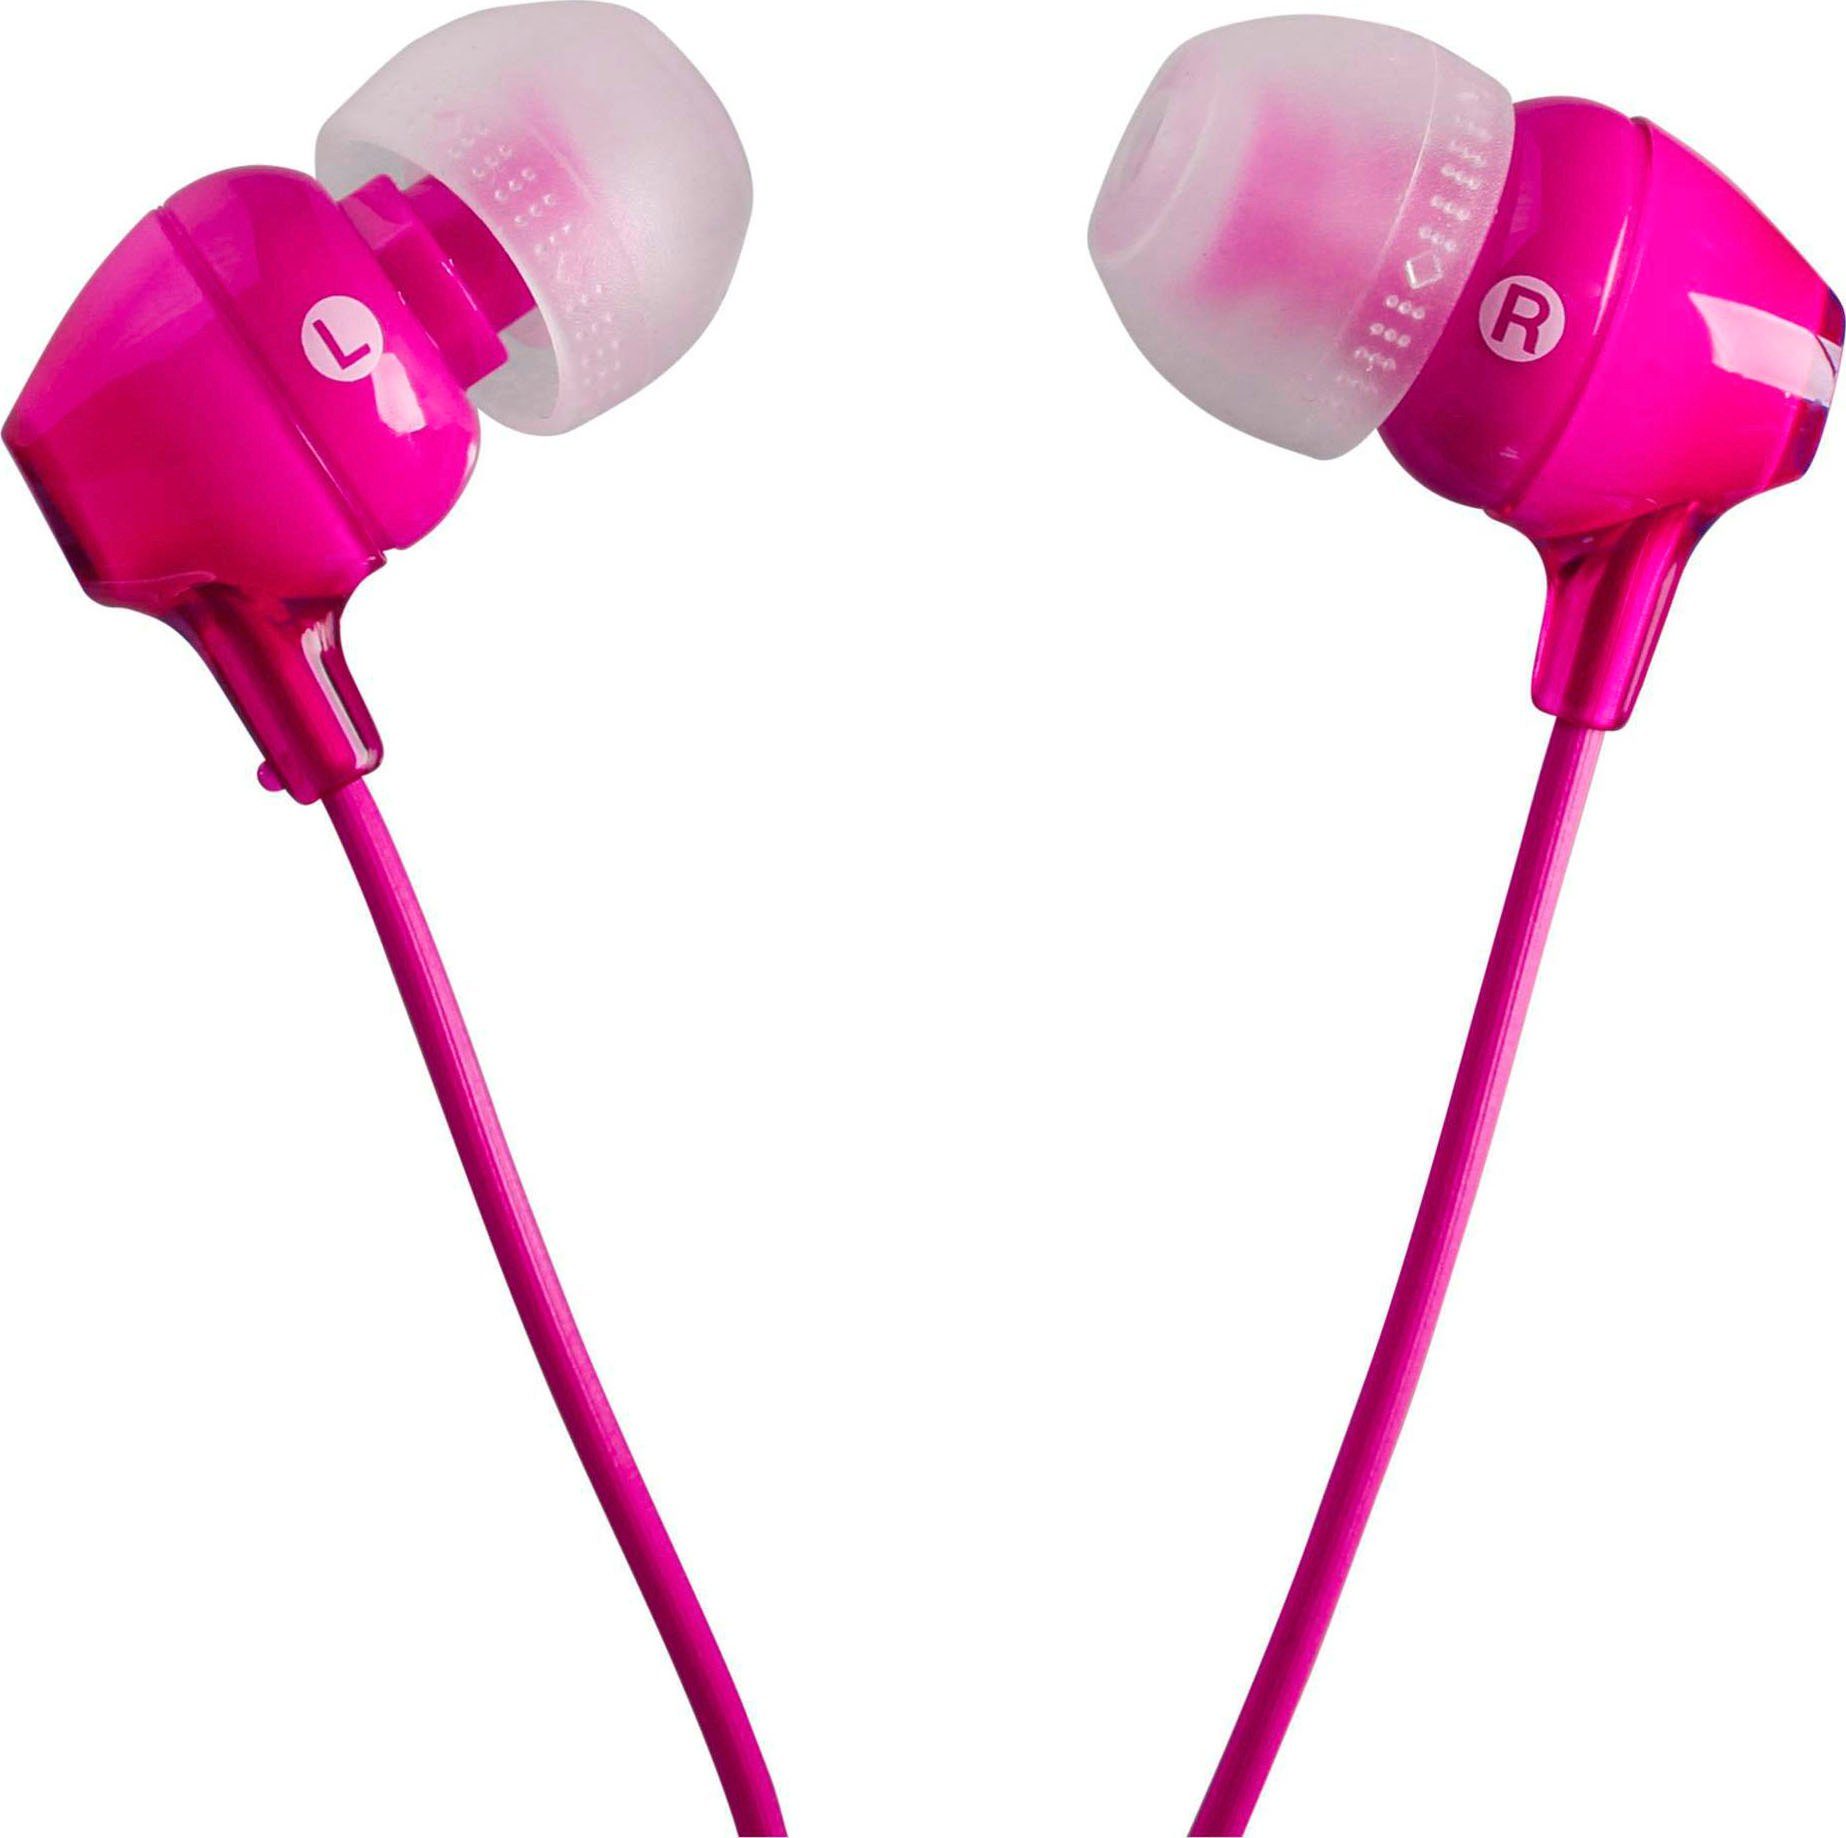 MDR-EX15AP In-Ear-Kopfhörer Sony (Rauschunterdrückung, Fernbedienung) mit pink